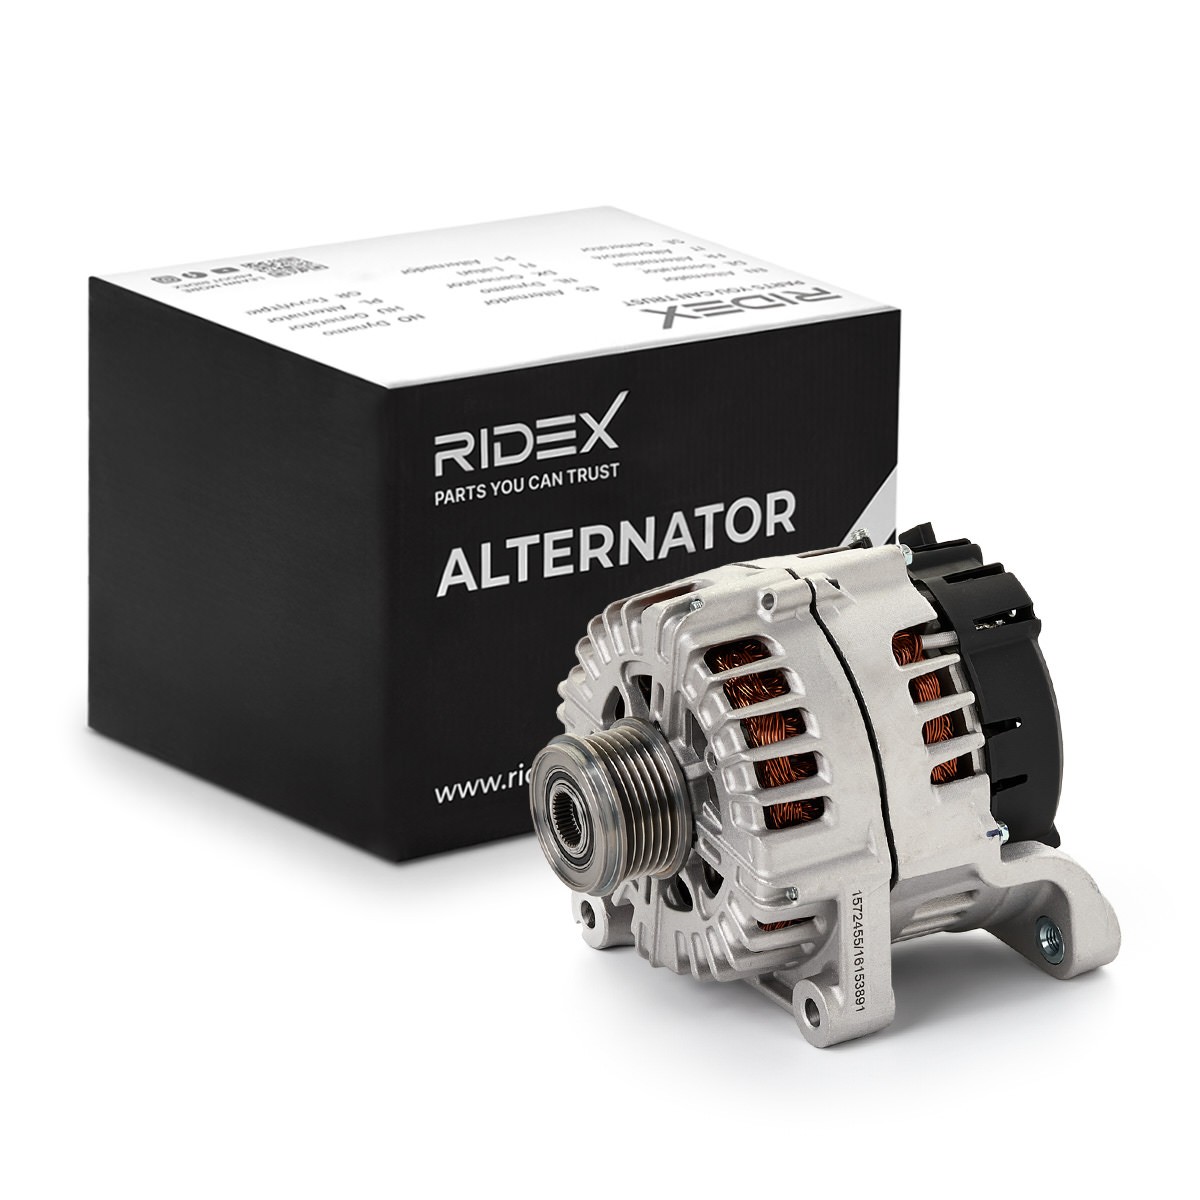 RIDEX Generator BMW 4G1266 12318519890,12318578608,12318578609 Lichtmaschine,Dynamo,Lima,Altenartor 7823343,7823344,8519890,12317823343,12317823344 von RIDEX